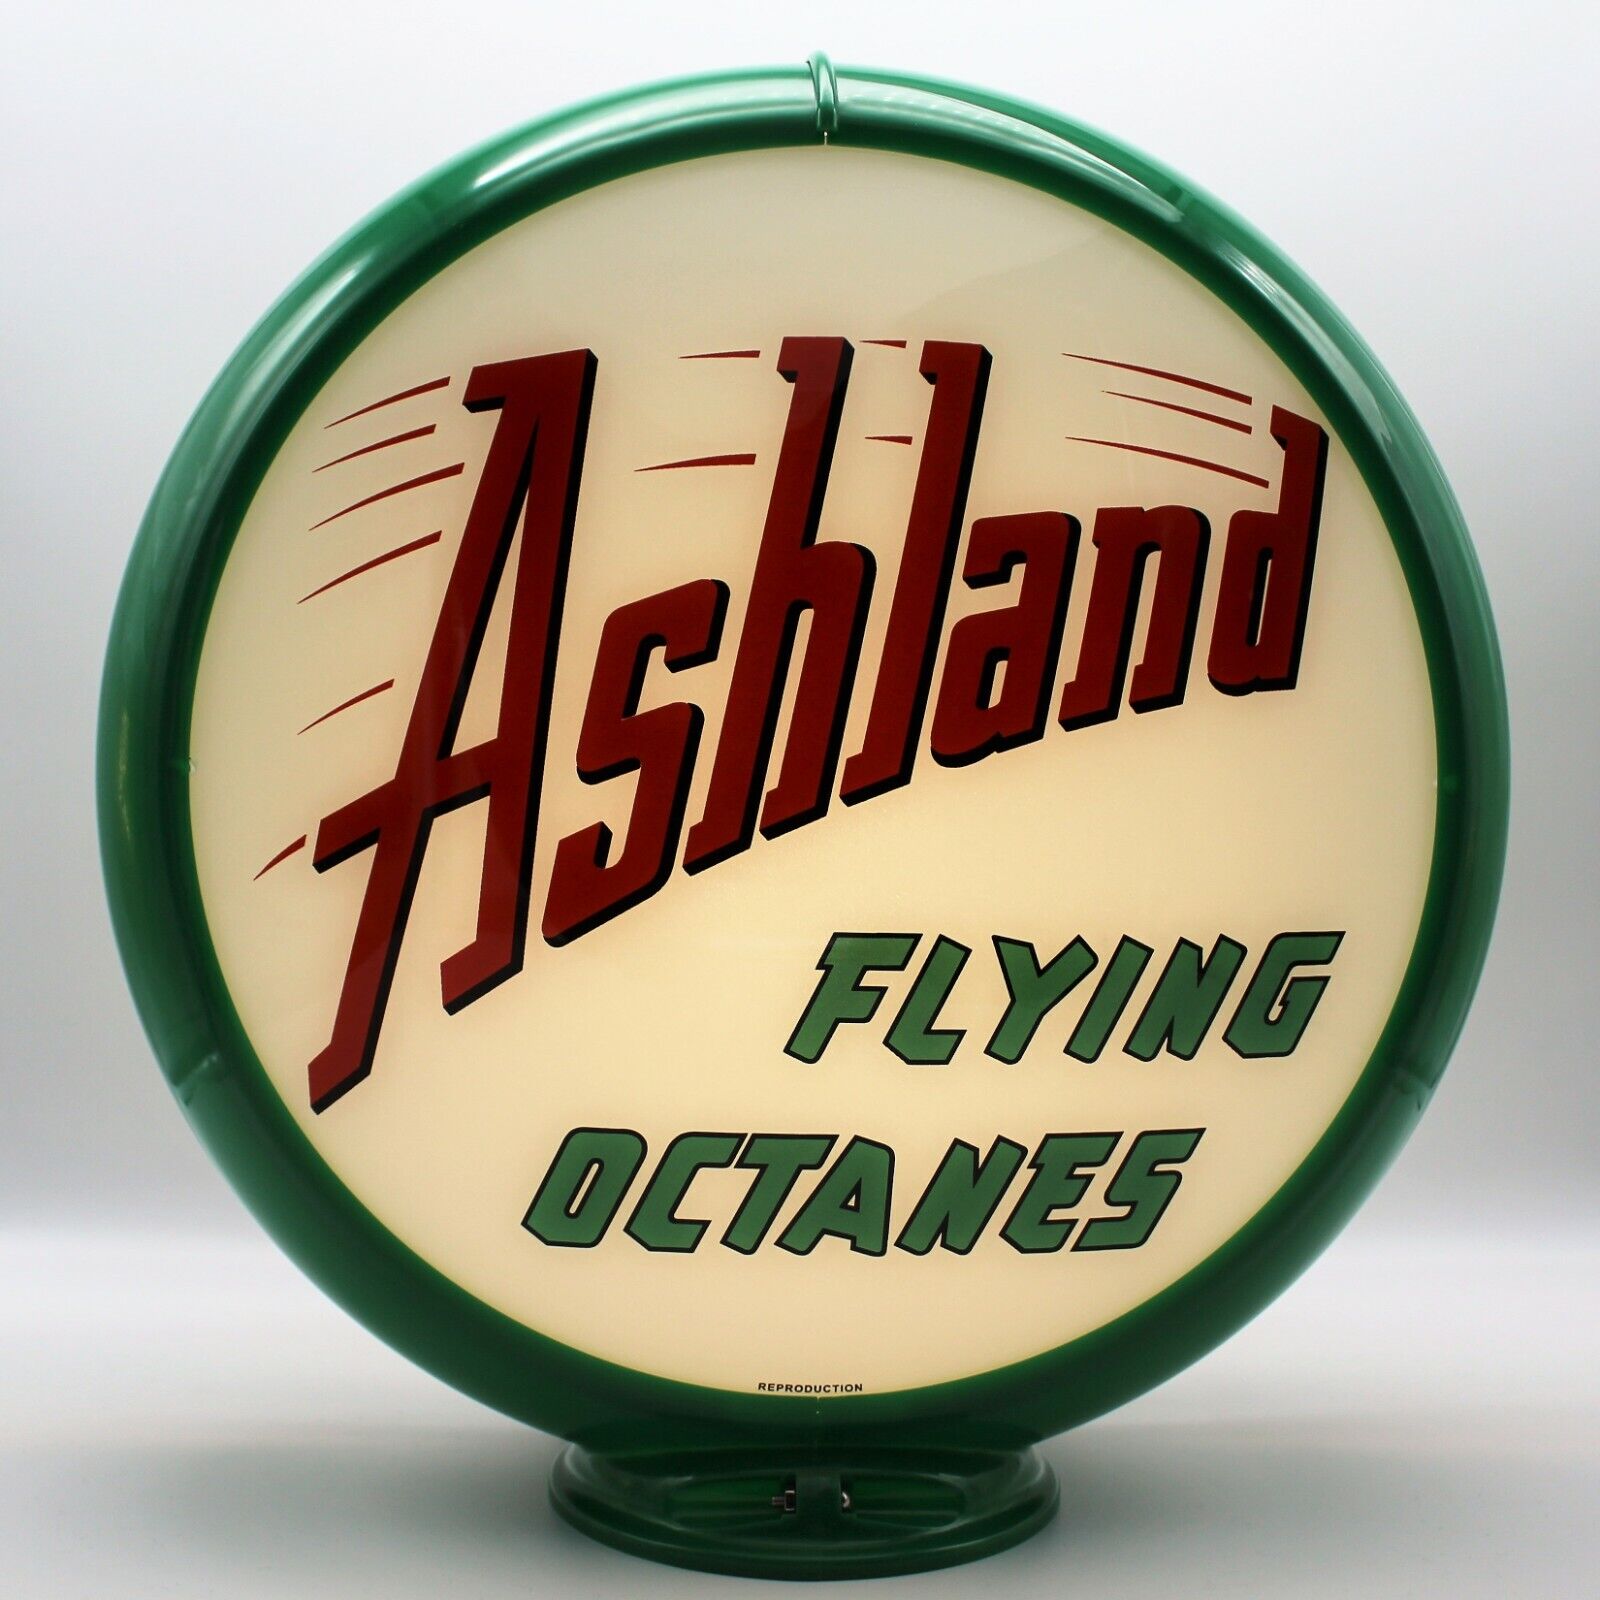 ASHLAND FLYING OCTANES 13.5